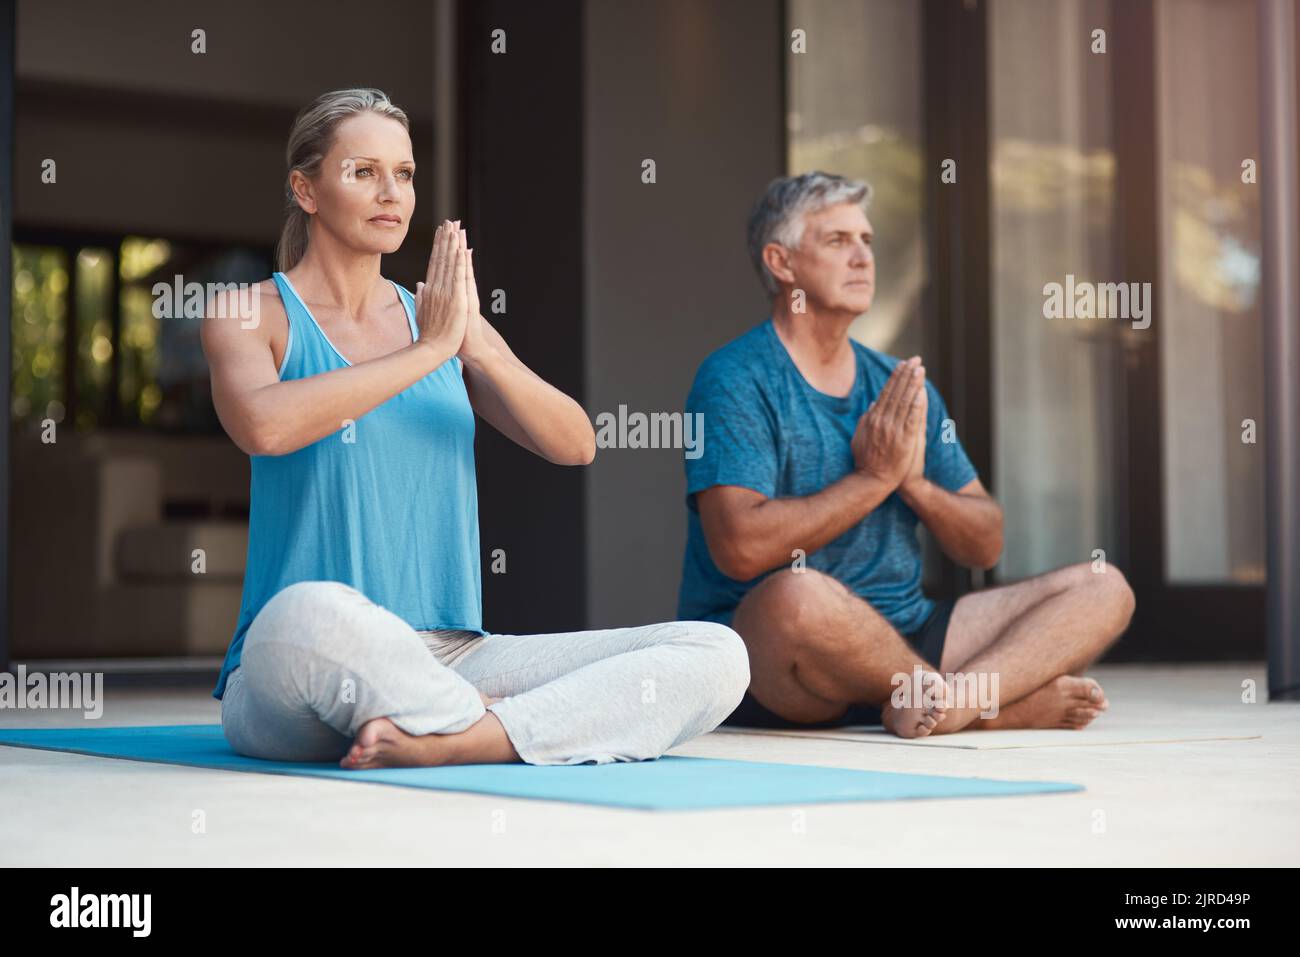 Lassen Sie allen Stress los und lassen Sie den Frieden über sich ziehen. Ein reifes Paar nimmt friedlich eine Yoga-Pose mit gekreuzten Beinen und zusammengesteppten Händen ein. Stockfoto